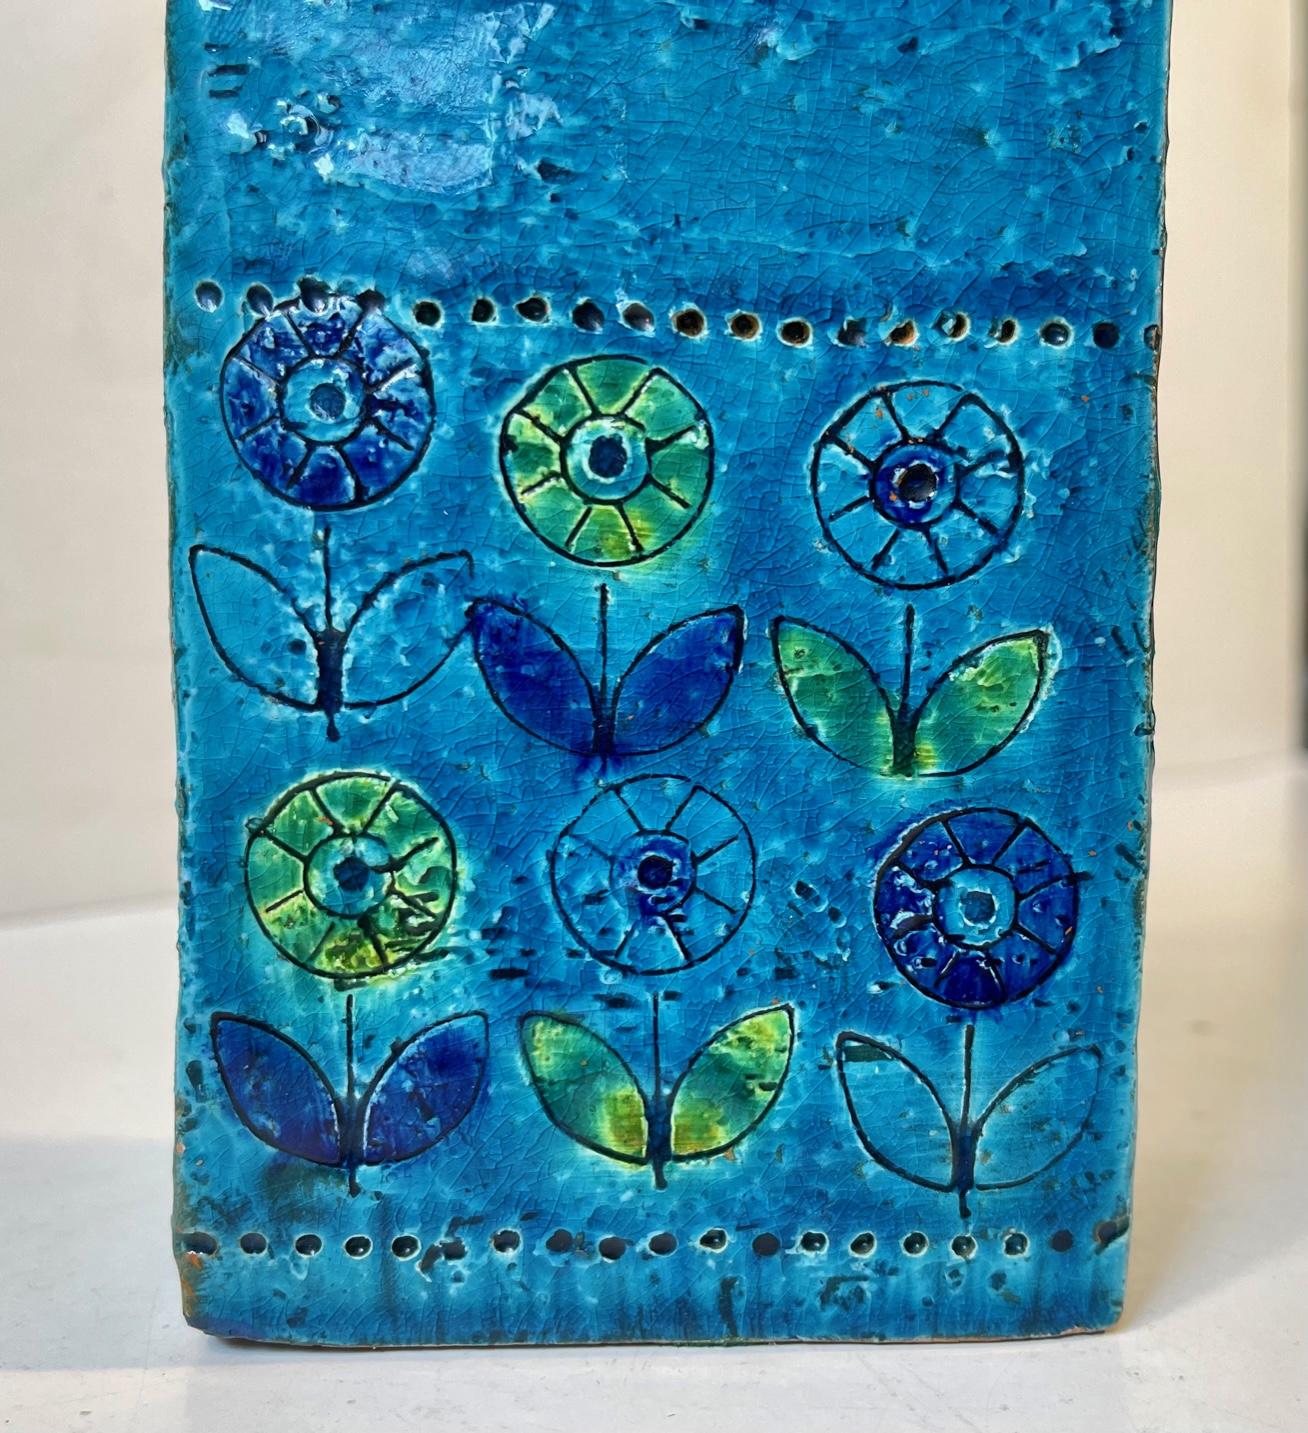 Un rare vase rectangulaire en grès bleu de Rimini décoré de tournesols. Conçu par Aldo Londi et fabriqué en Italie par Bitossi dans les années 1960. Mesures : H : 16,5 cm, L/D : 8,5/5,5 cm.